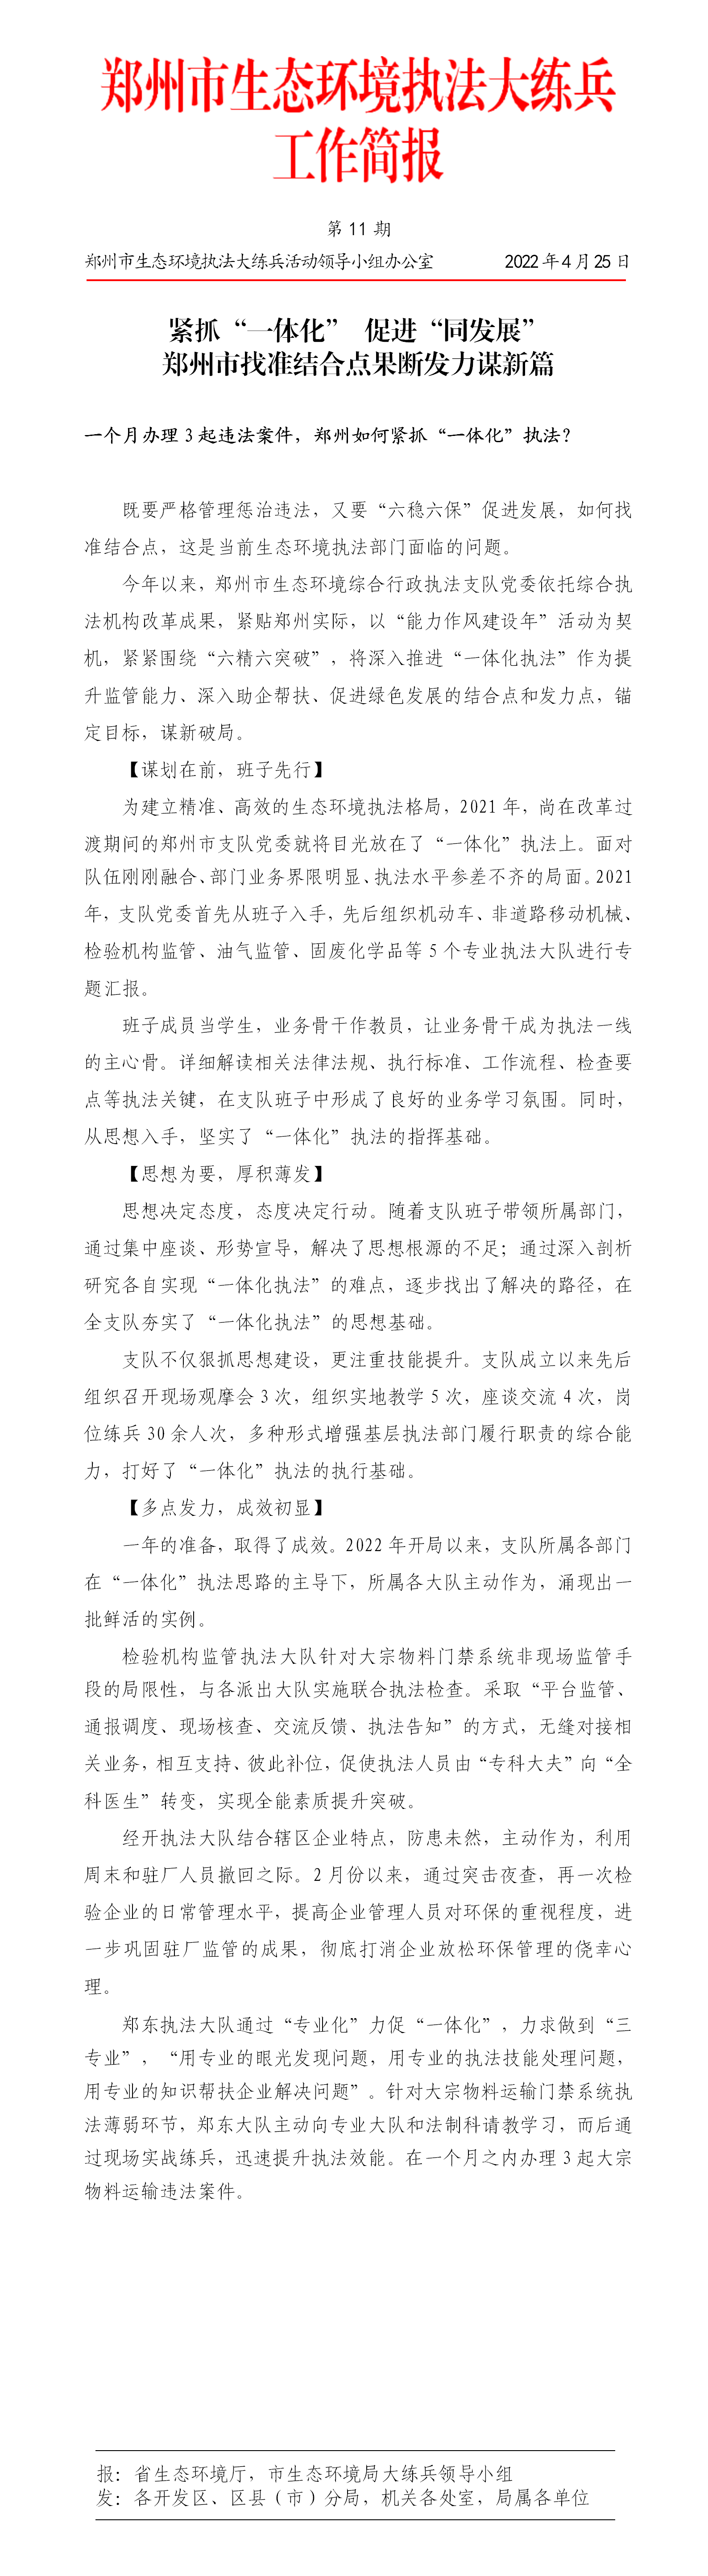 第11期  郑州市找准结合点果断发力谋新篇_01.png